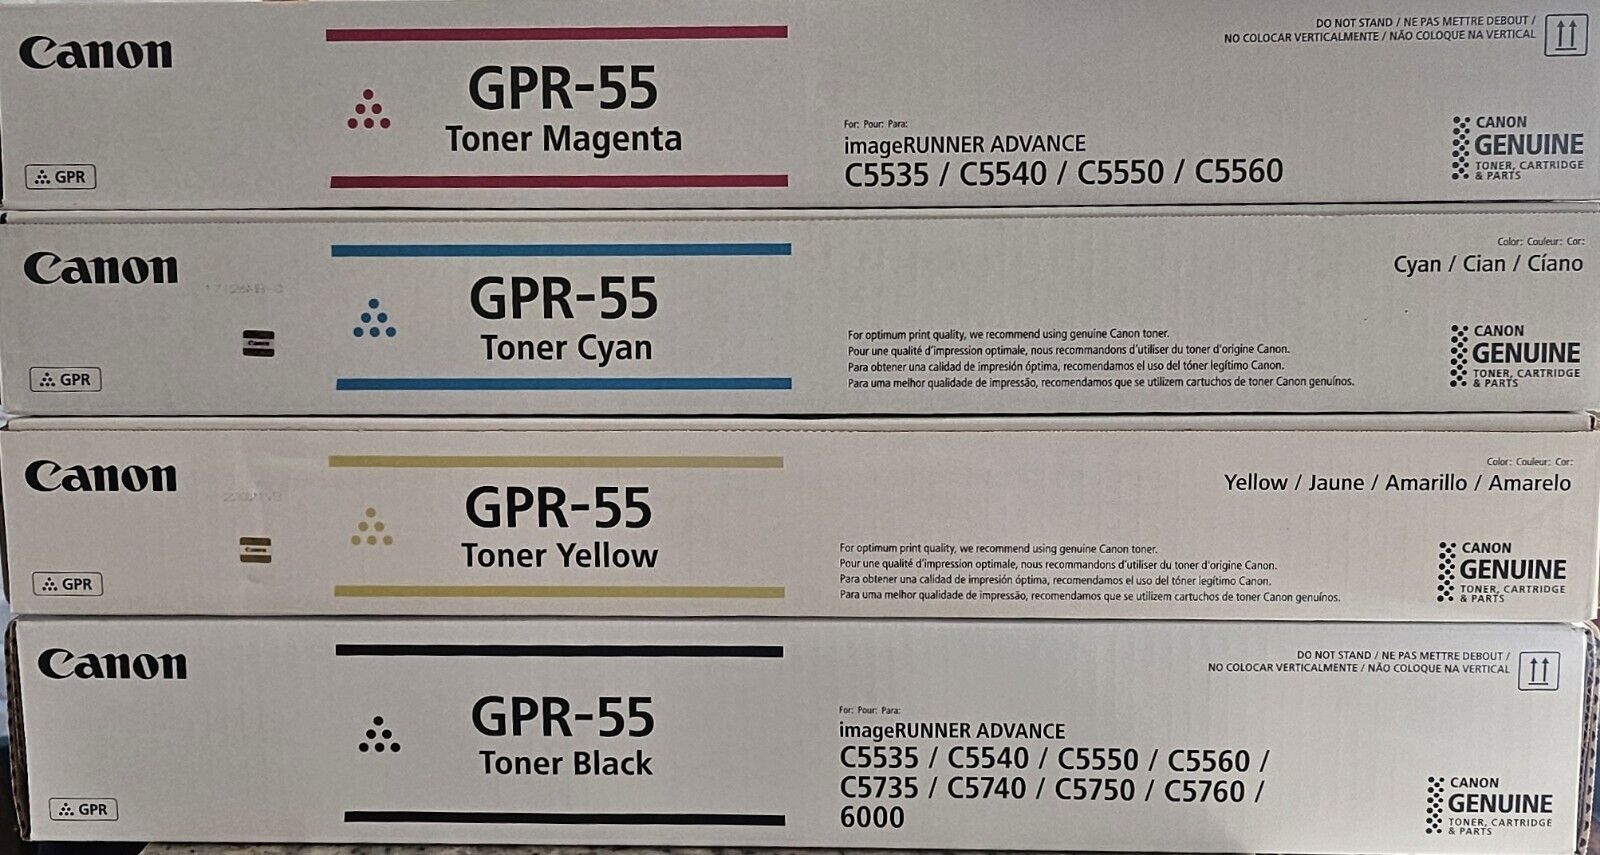 Full Set of GRP-55 Toner